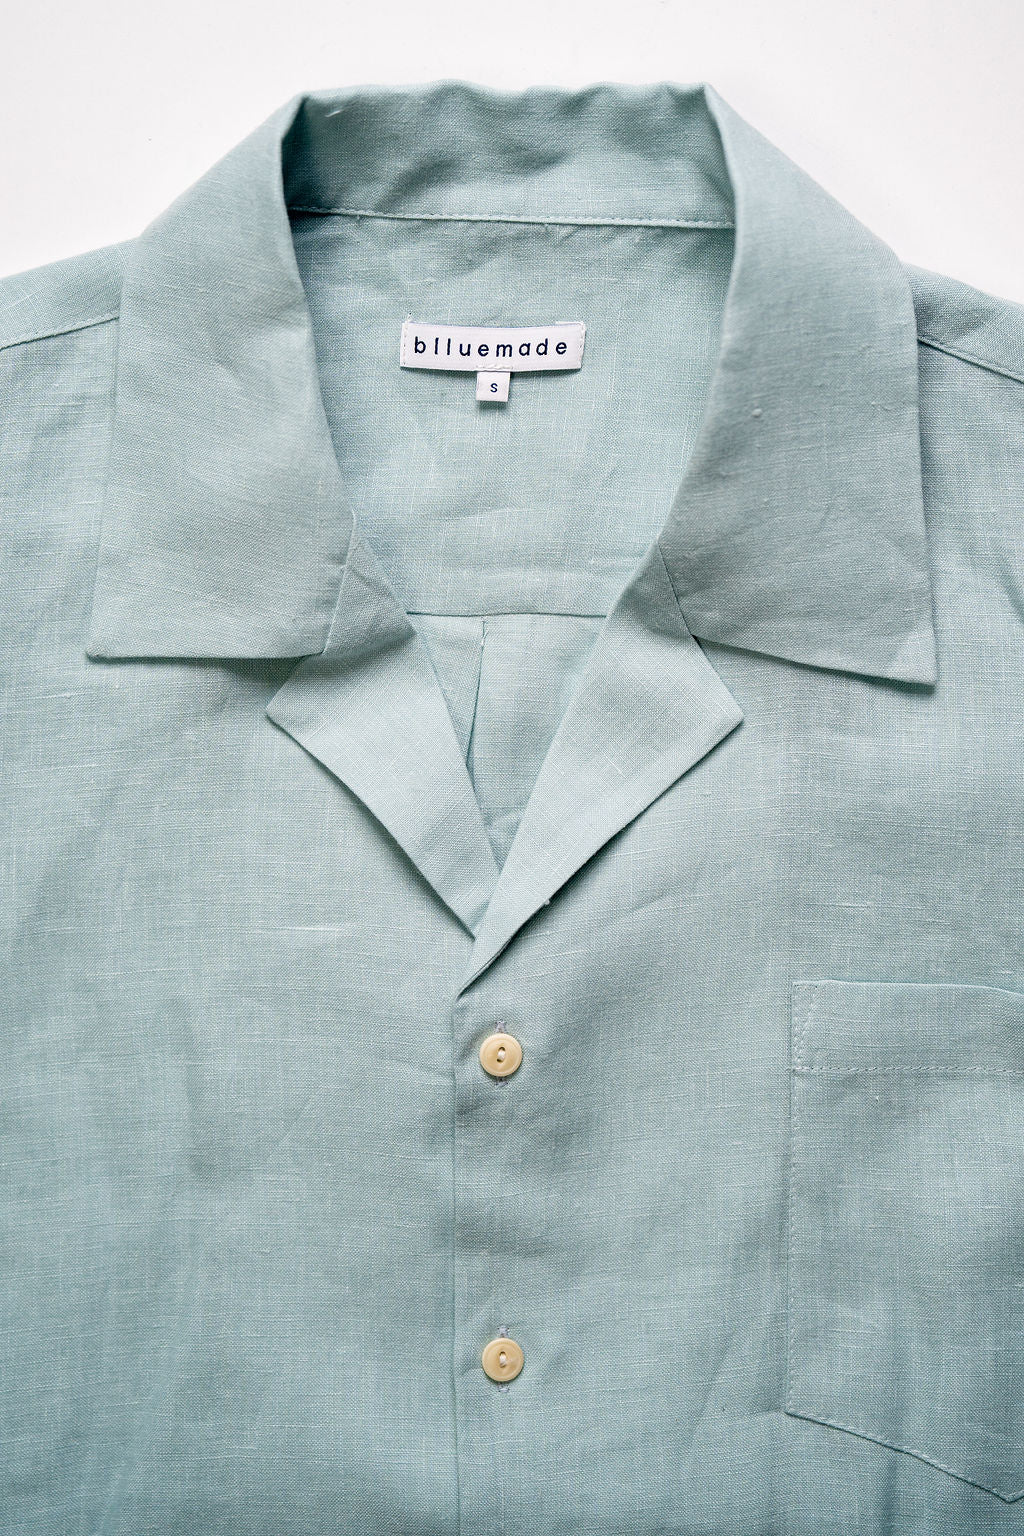 Blluemade Spread Collar Shirt - Light Blue Belgian Linen